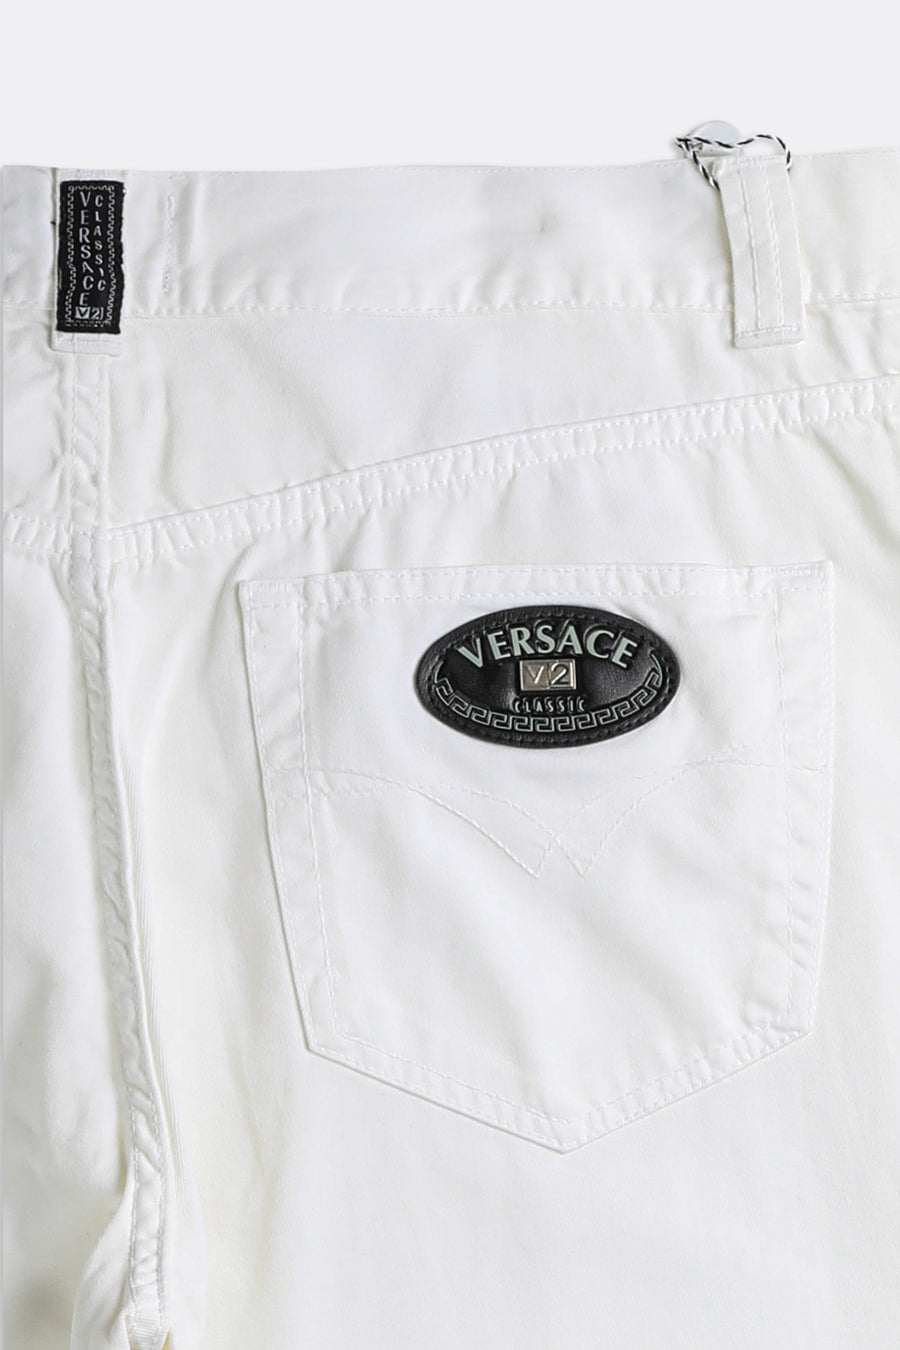 Vintage Versace Denim Pants - W36